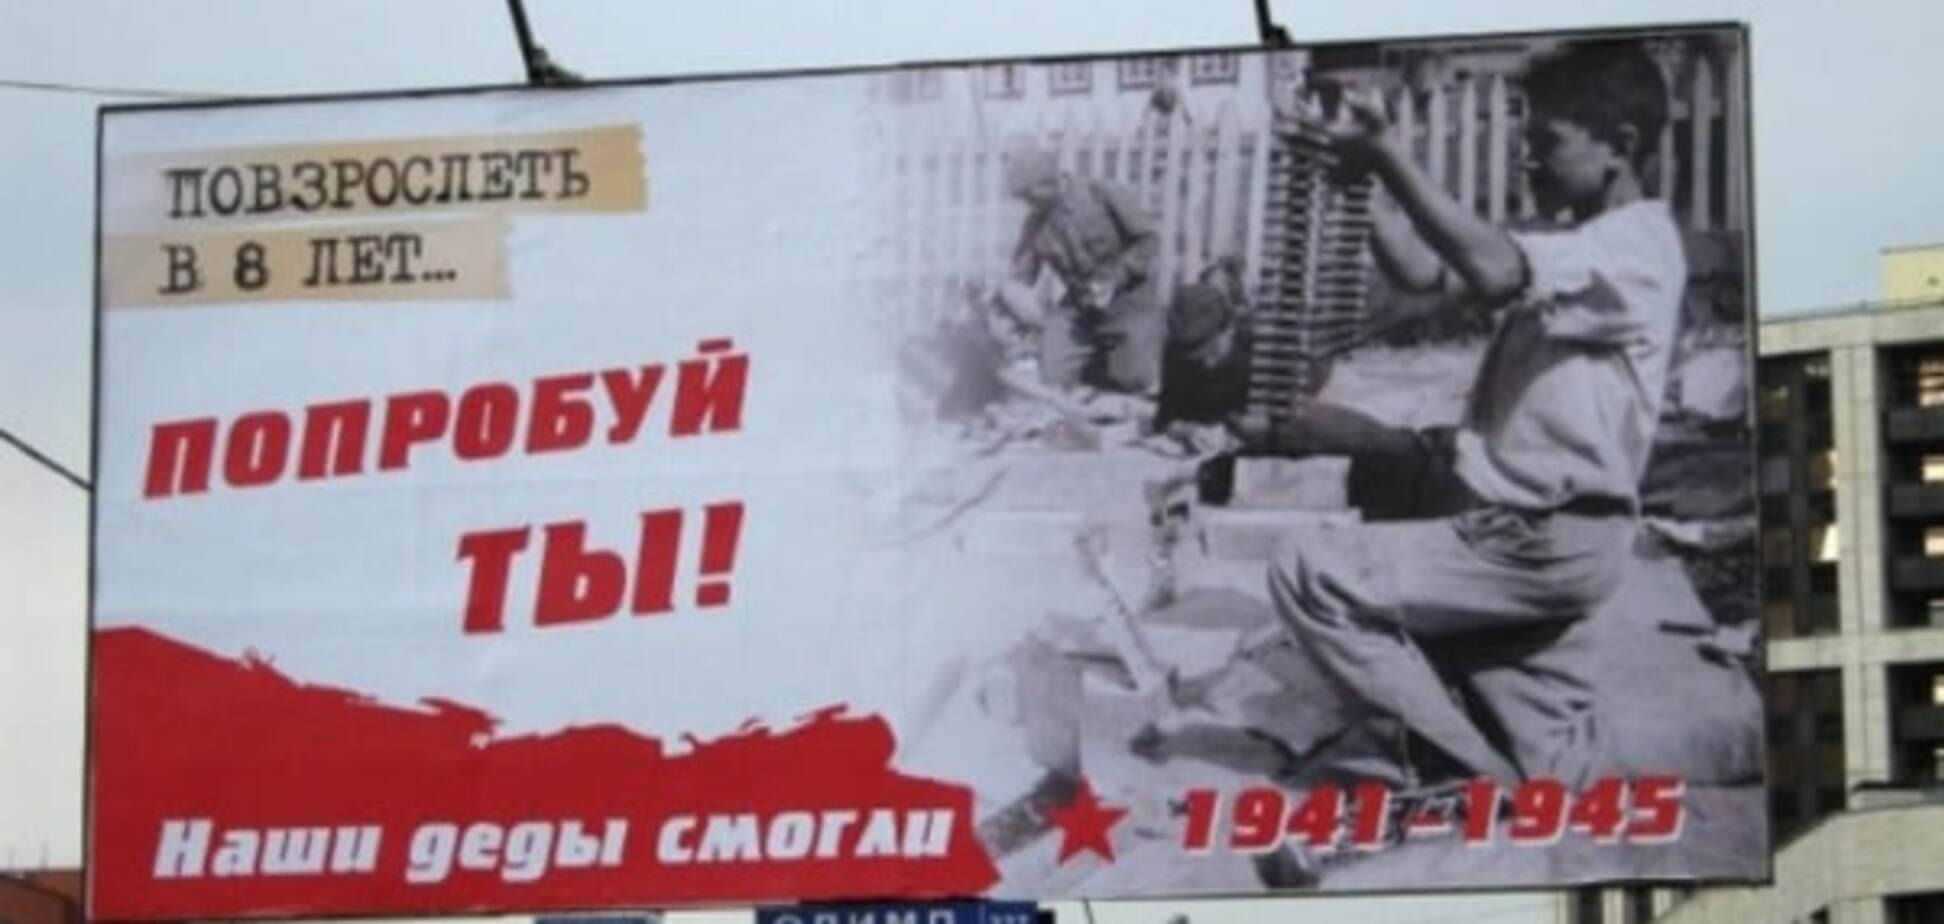 'Деды воевали': Путин назвал главное событие года